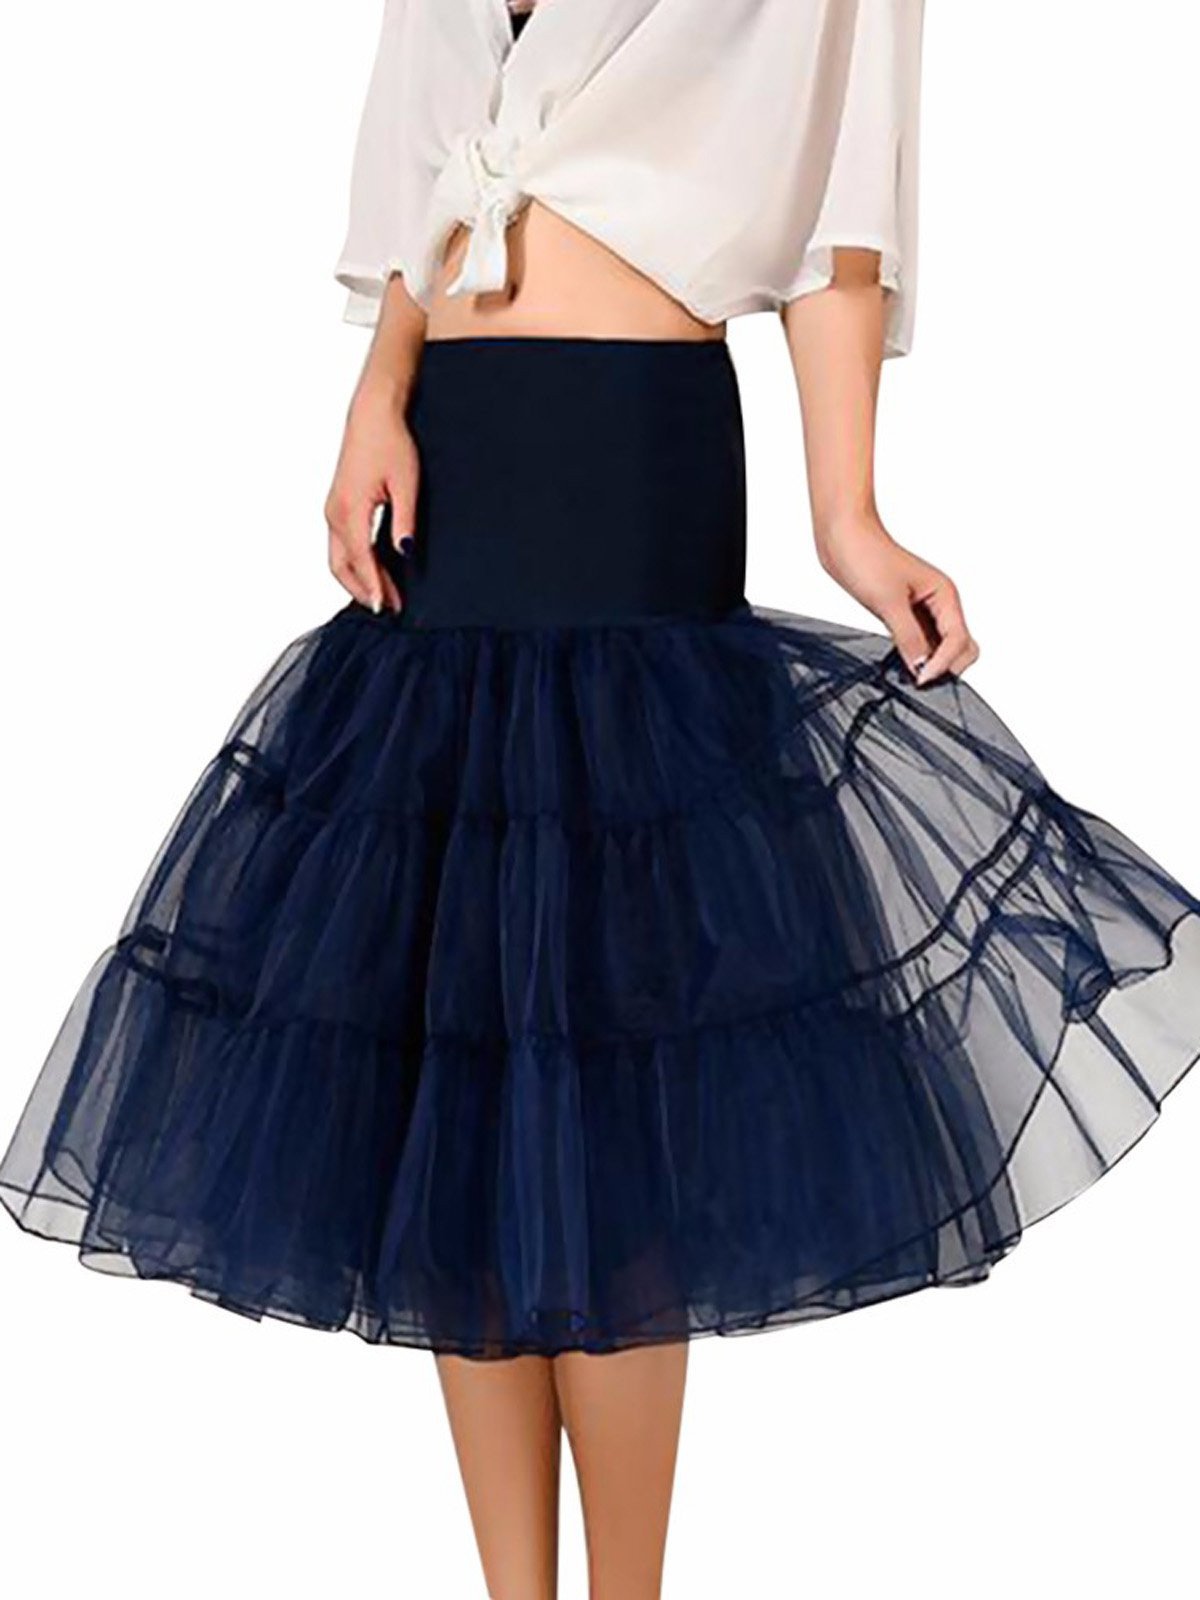 Нижняя юбка-пачка 1950-х годов из кринолина